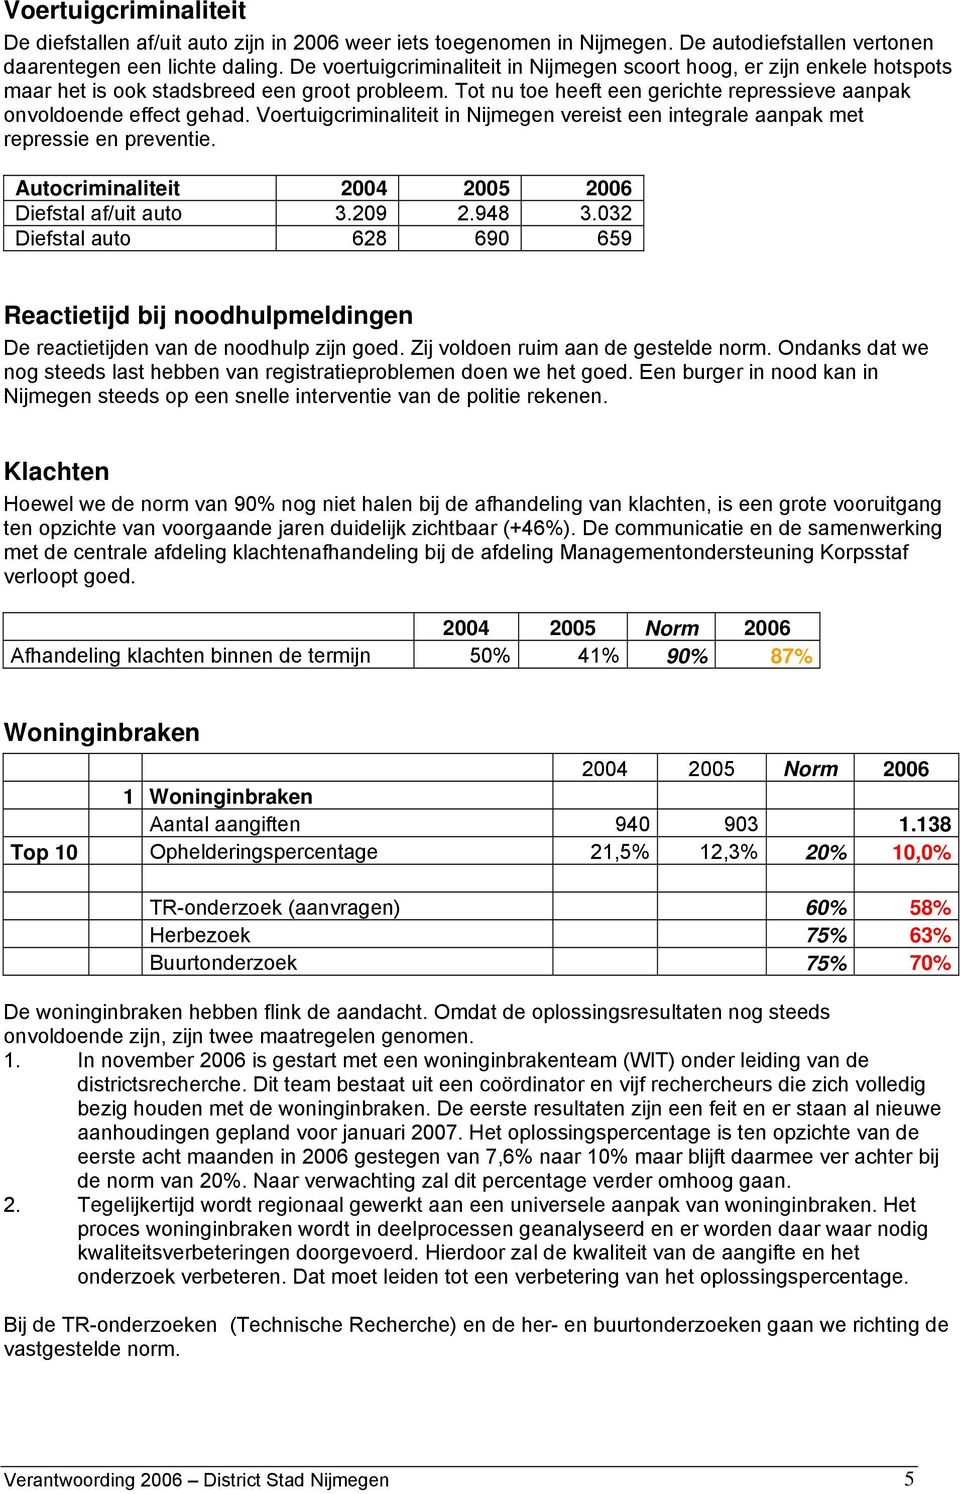 Voertuigcriminaliteit in Nijmegen vereist een integrale aanpak met repressie en preventie. Autocriminaliteit 2004 2005 2006 Diefstal af/uit auto 3.209 2.948 3.